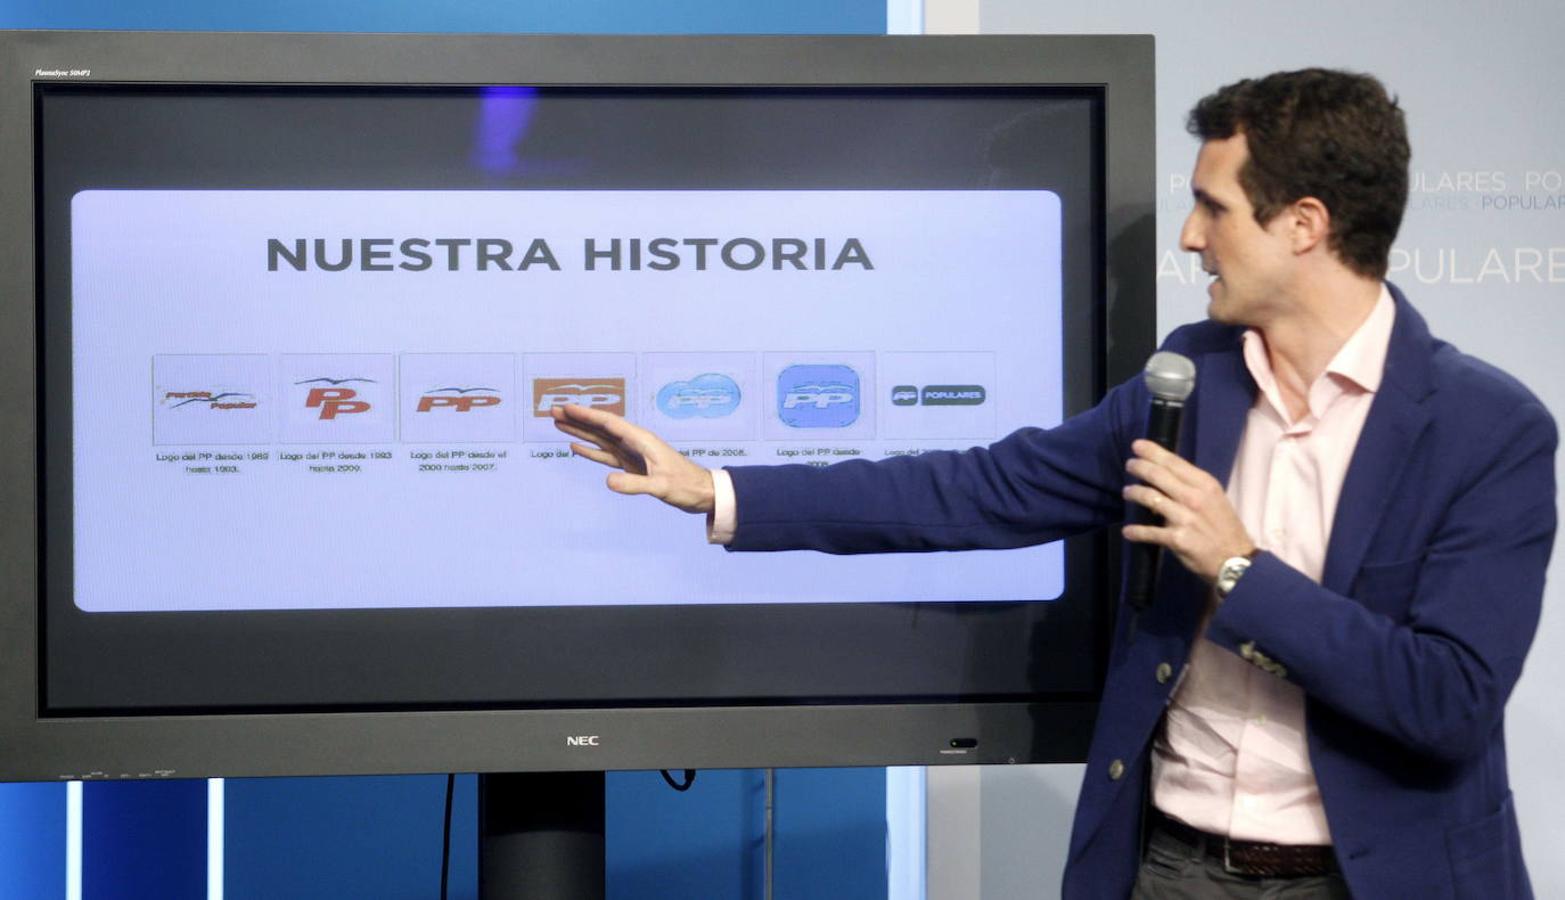 El ya vicesecretario de Comunicación del PP, Pablo Casado muestra en una pantalla la evolución cronológica de los sucesivos logotipos del Partido Popular.